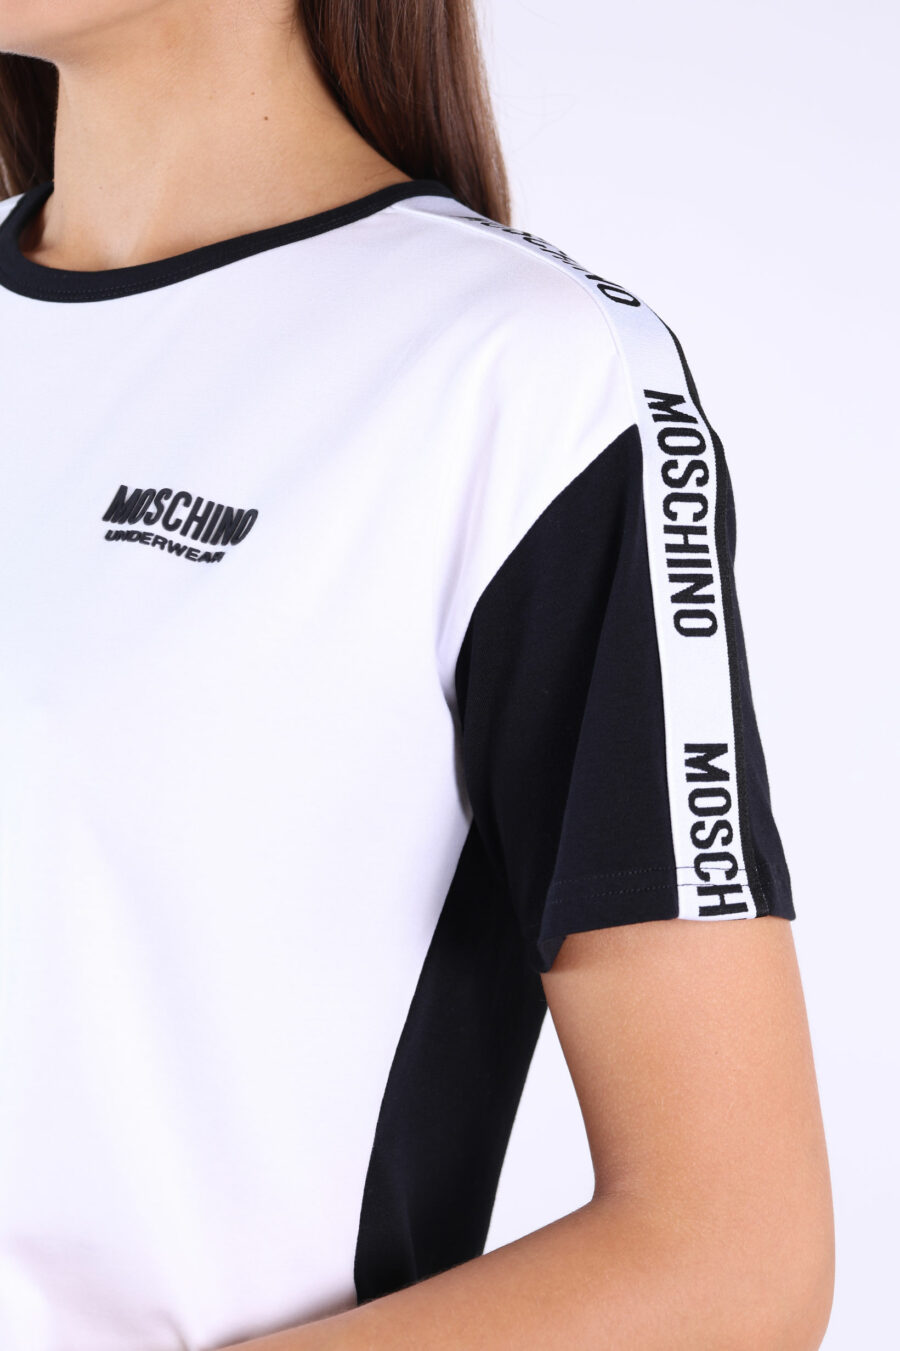 Camiseta blanca de mangas y espalda negra y logo en cinta - 361223054662202219